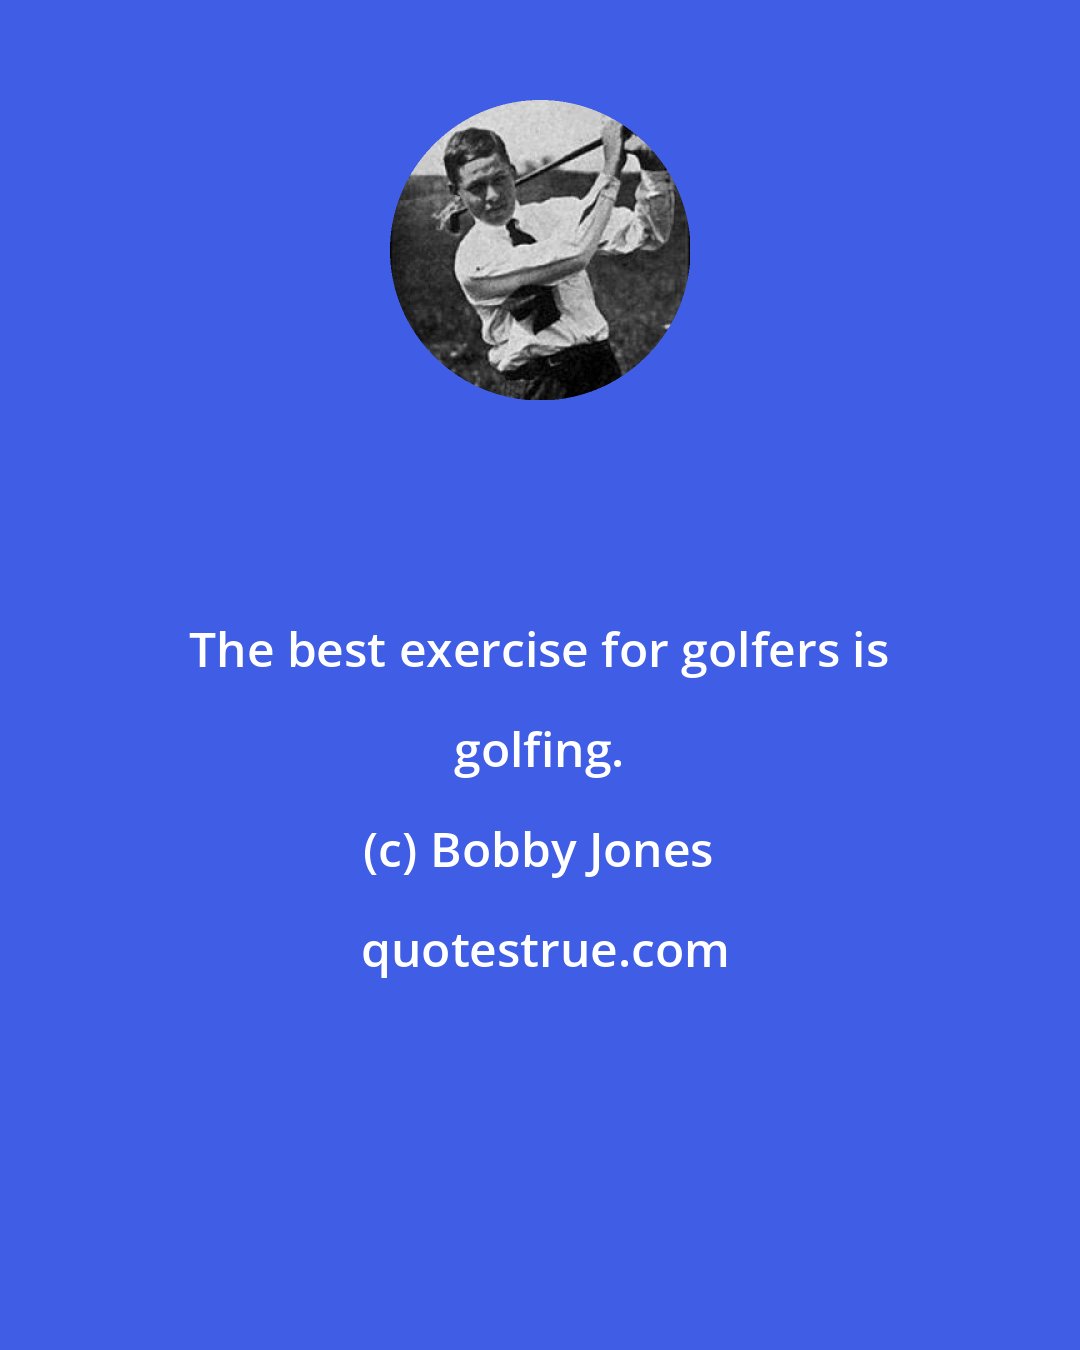 Bobby Jones: The best exercise for golfers is golfing.